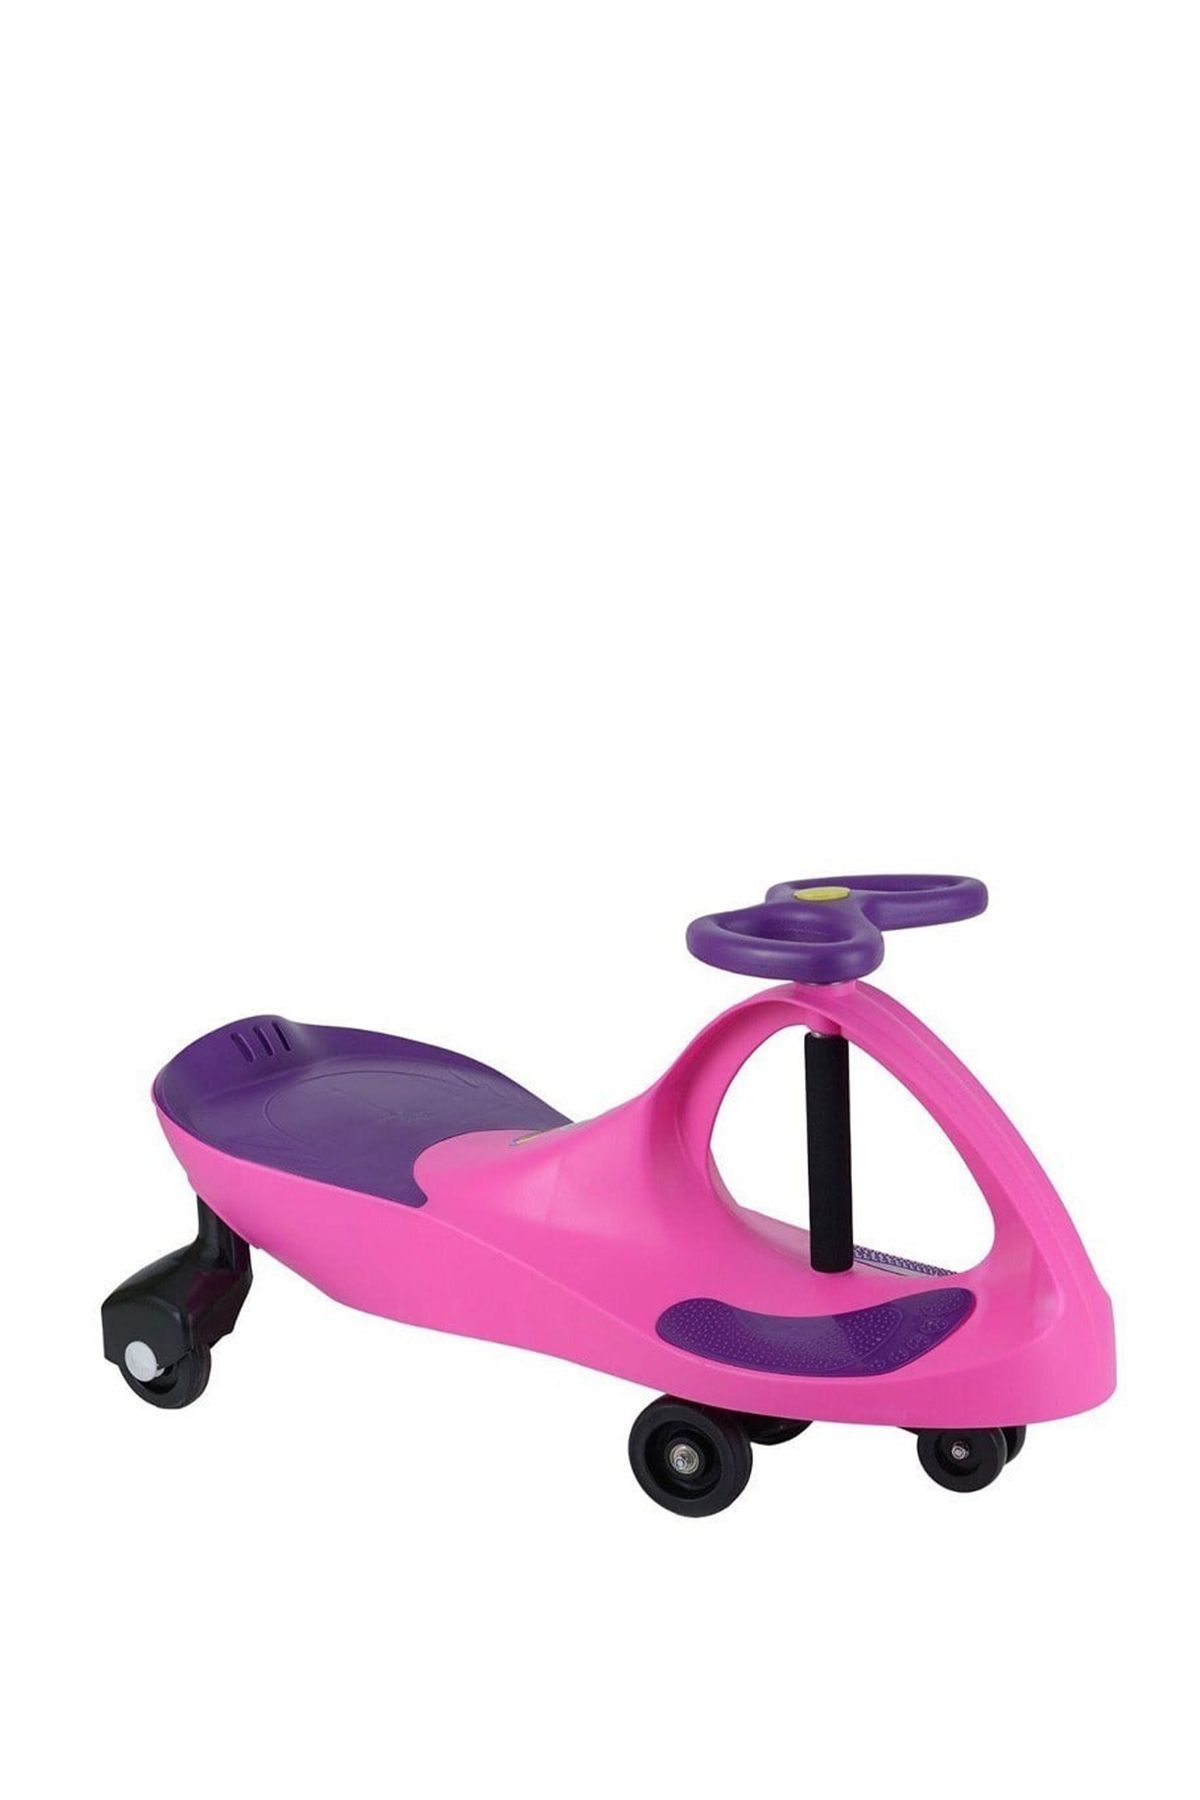 Plasmacar Pembe Mor Pedalsız Oyuncak Çocuk Arabası